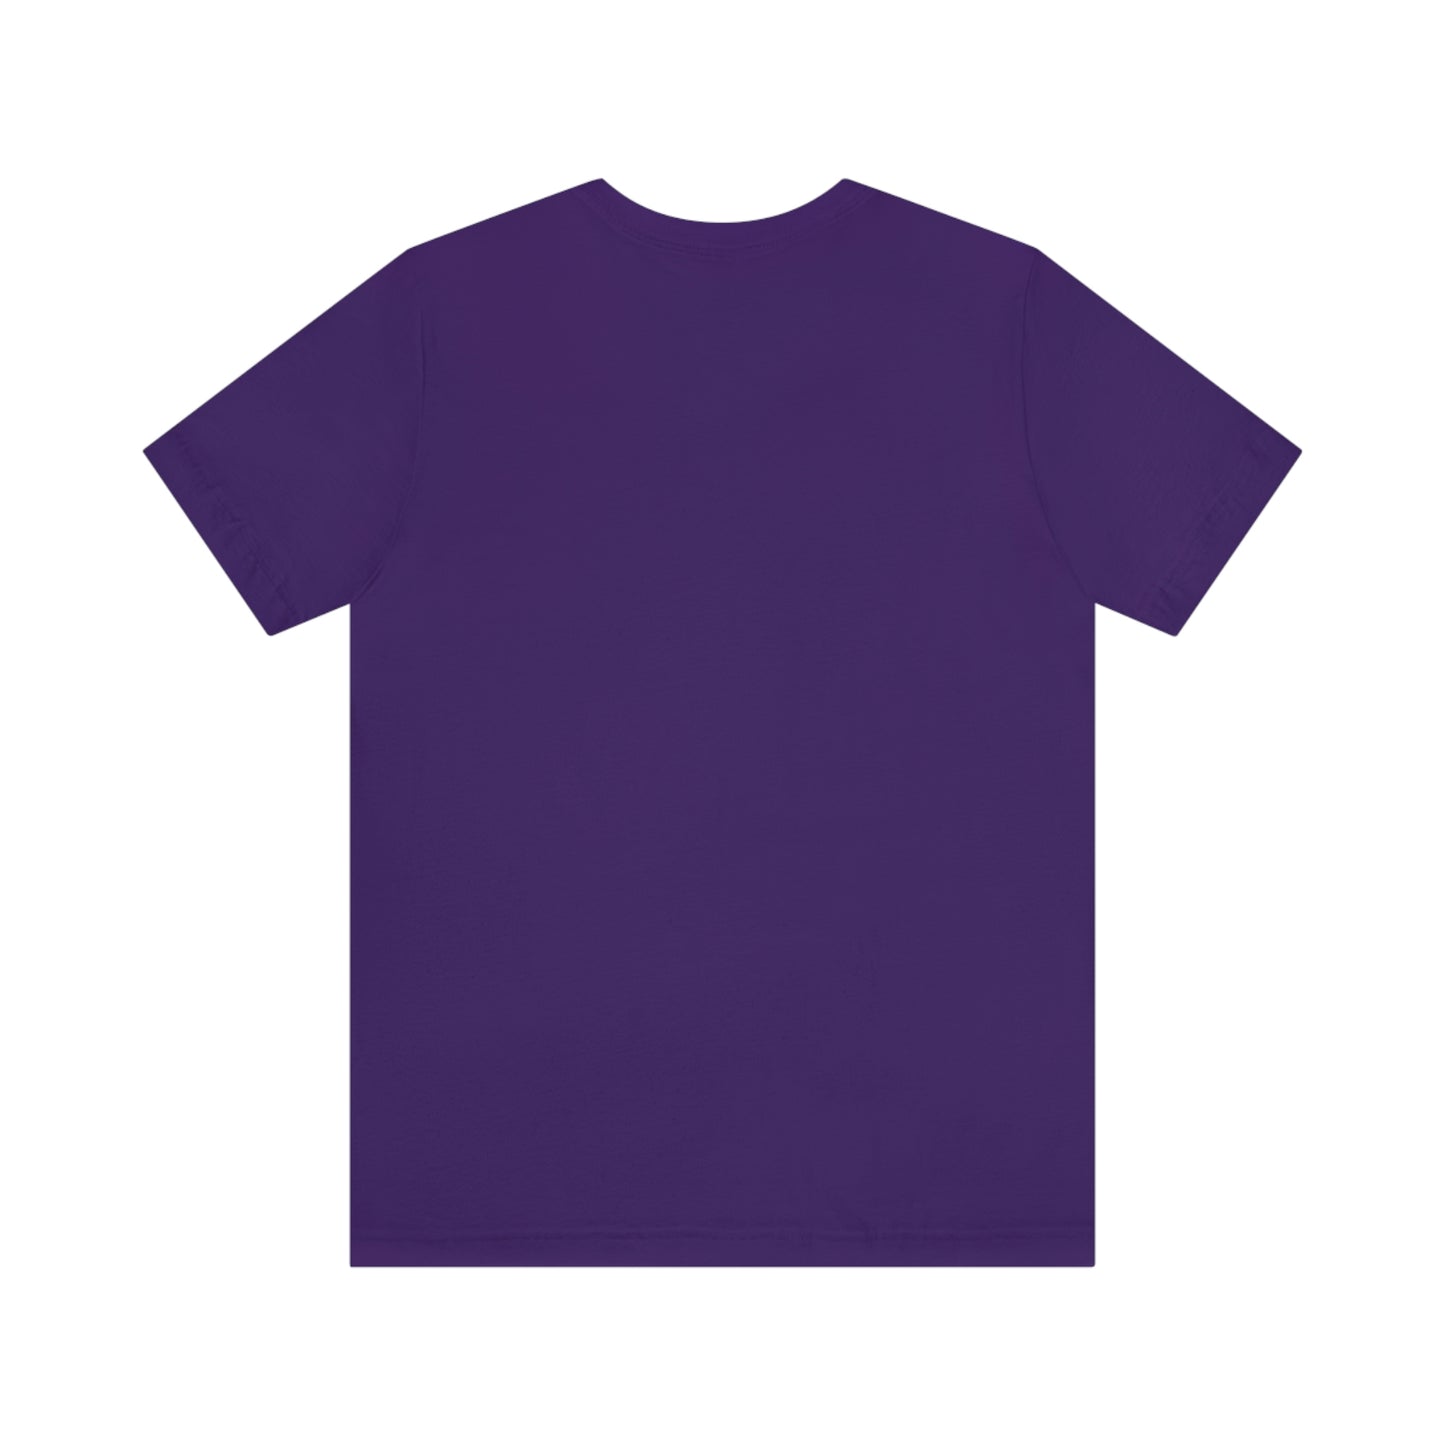 Purple T-Shirt plain back